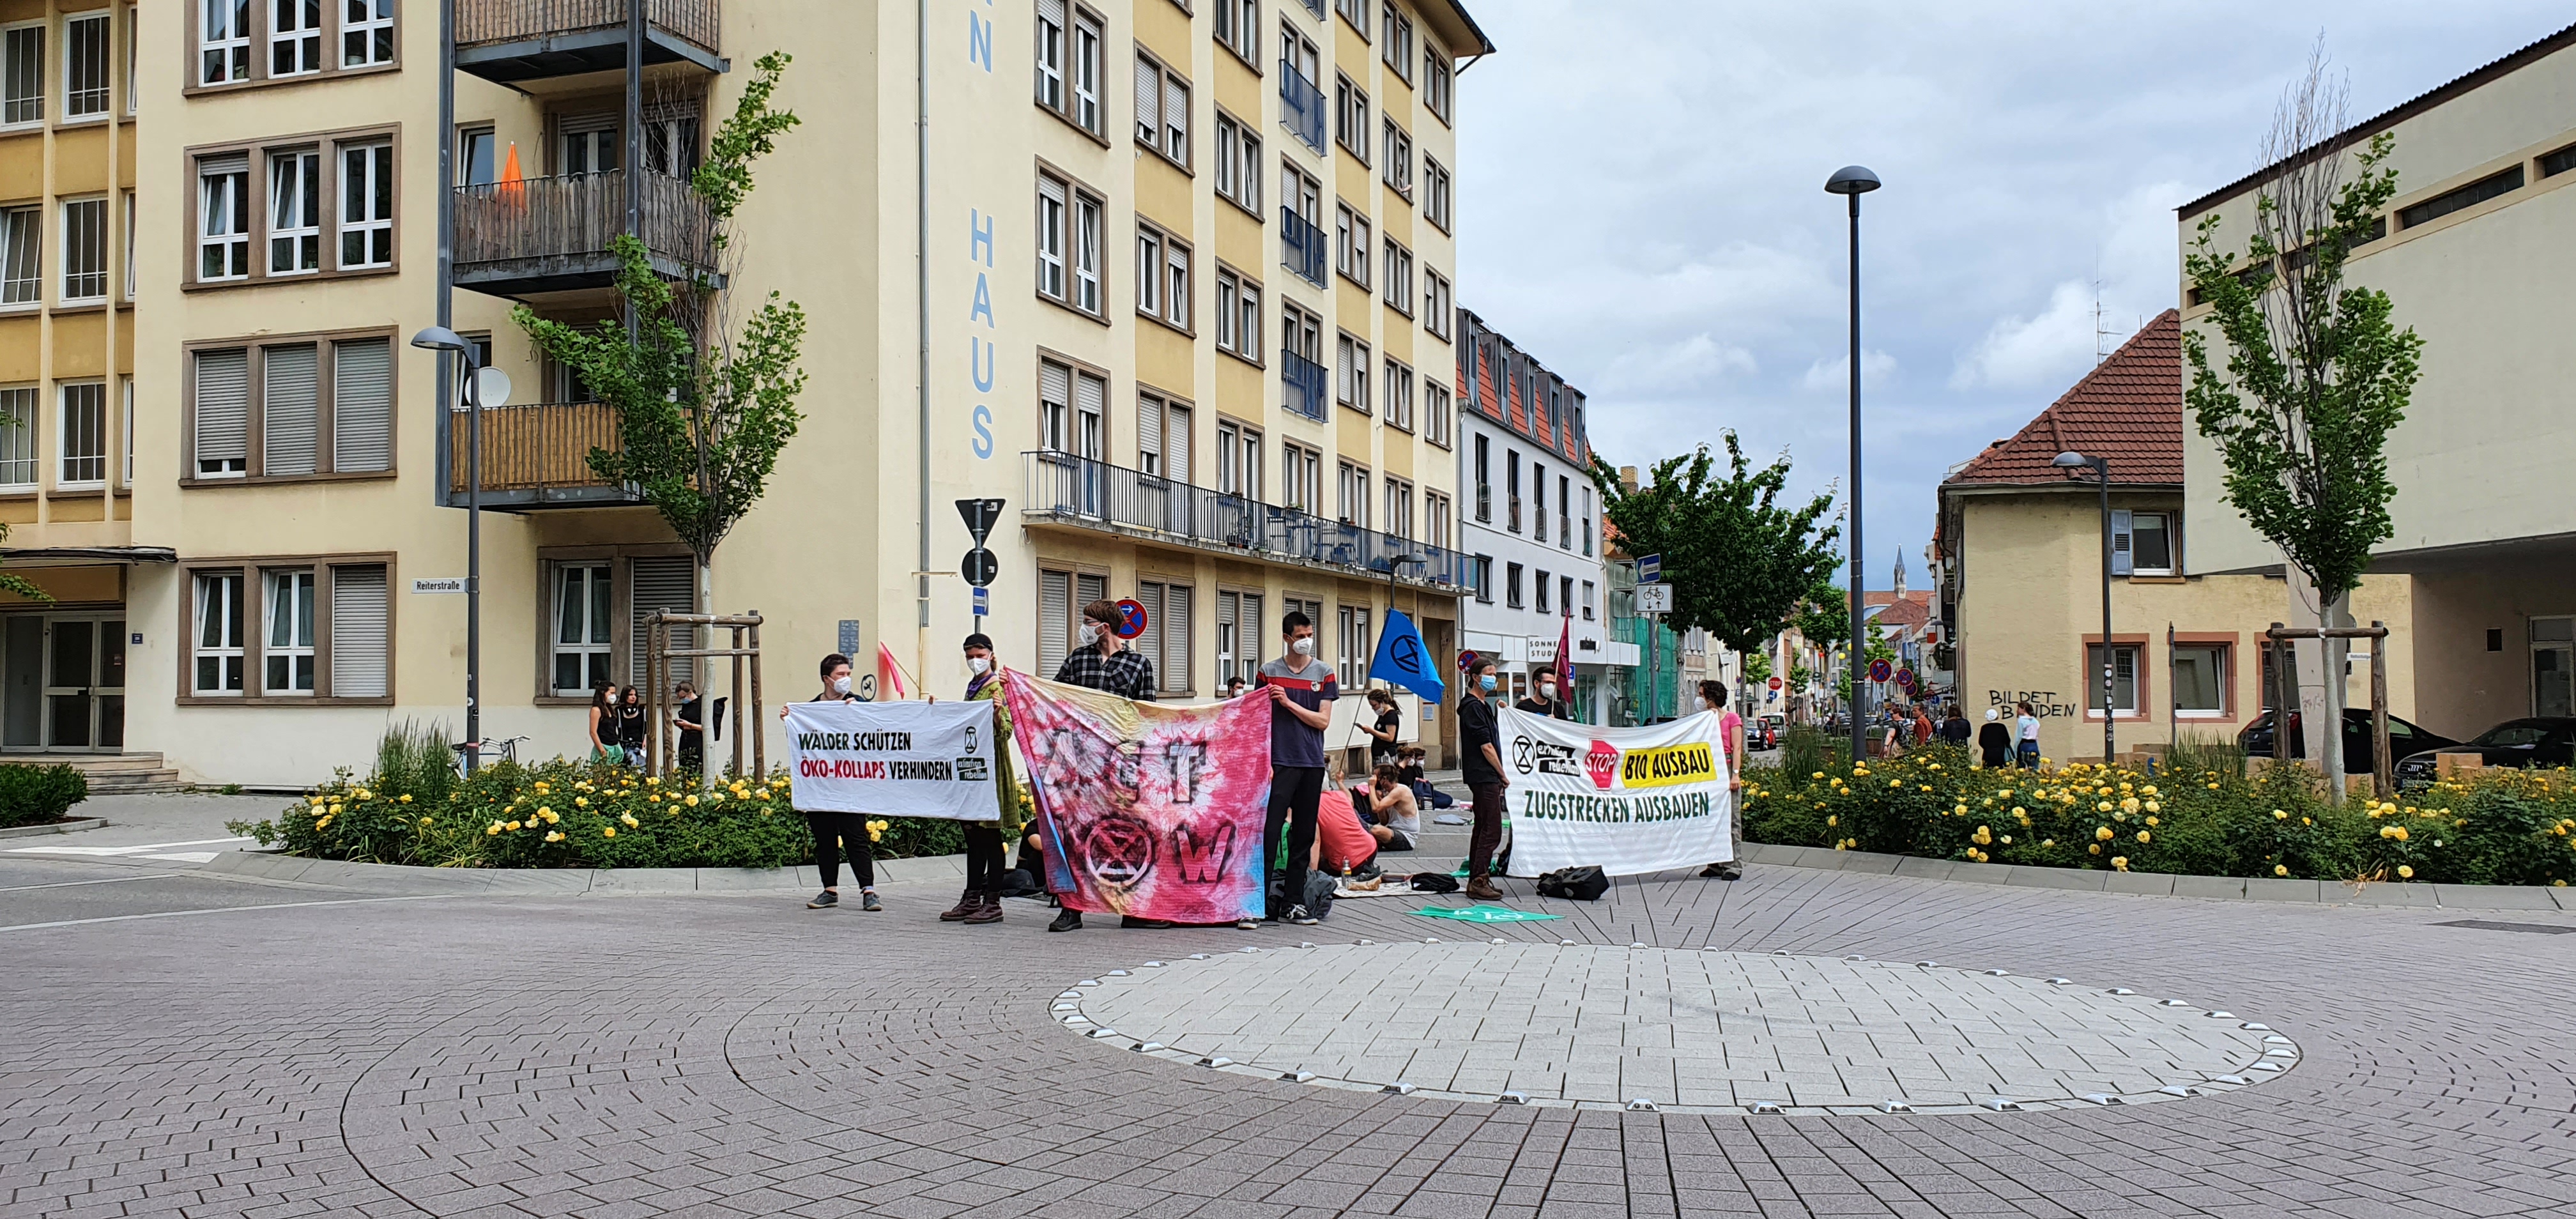 Blockade Königsstraße